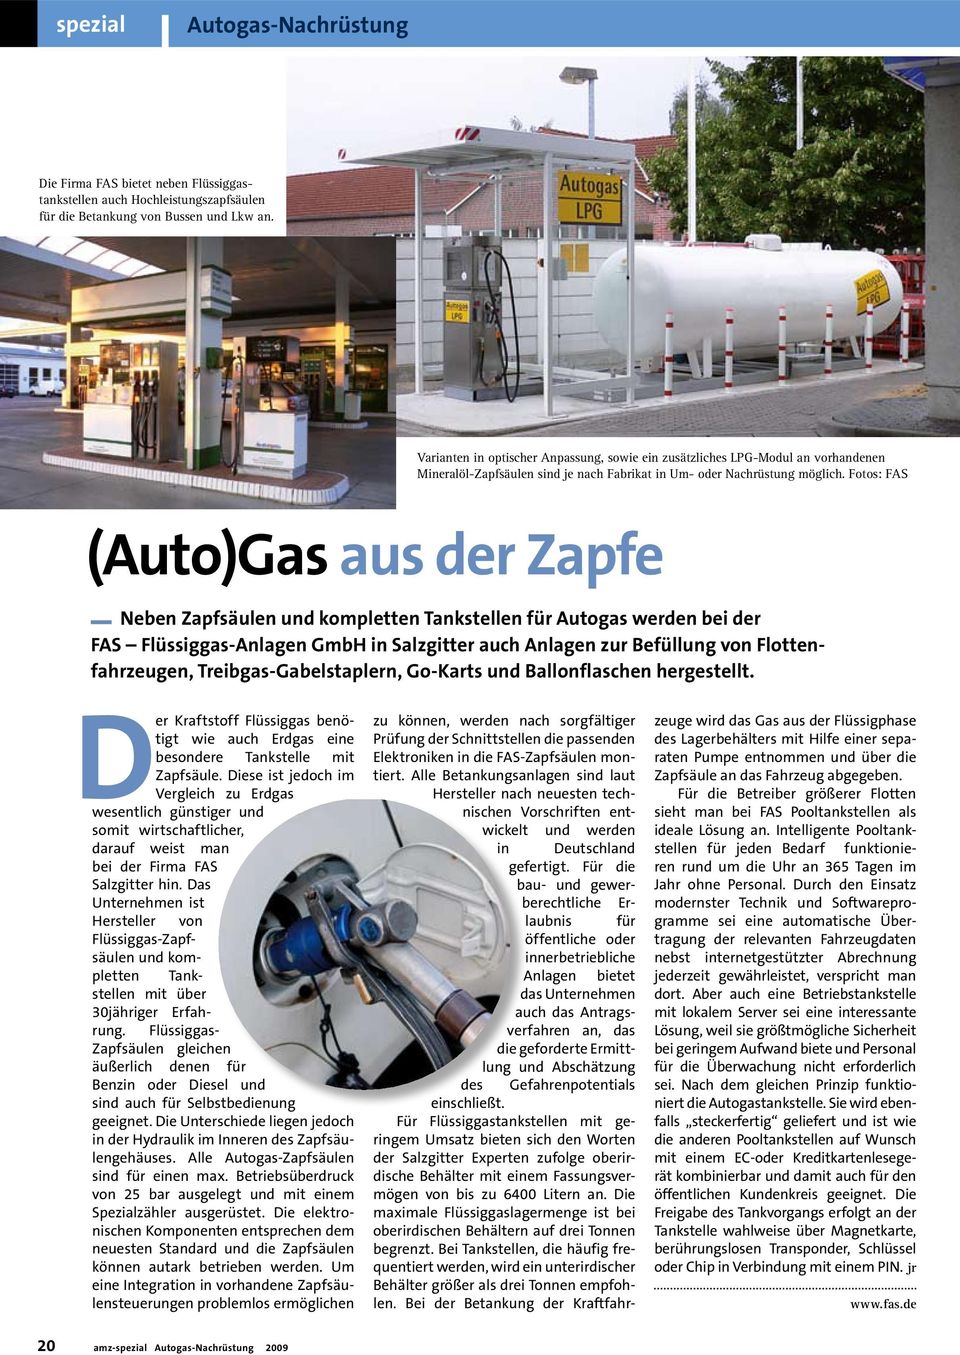 Fotos: FAS (Auto)Gas aus der Zapfe _ Neben Zapfsäulen und kompletten Tankstellen für Autogas werden bei der FAS Flüssiggas-Anlagen GmbH in Salzgitter auch Anlagen zur Befüllung von Flottenfahrzeugen,